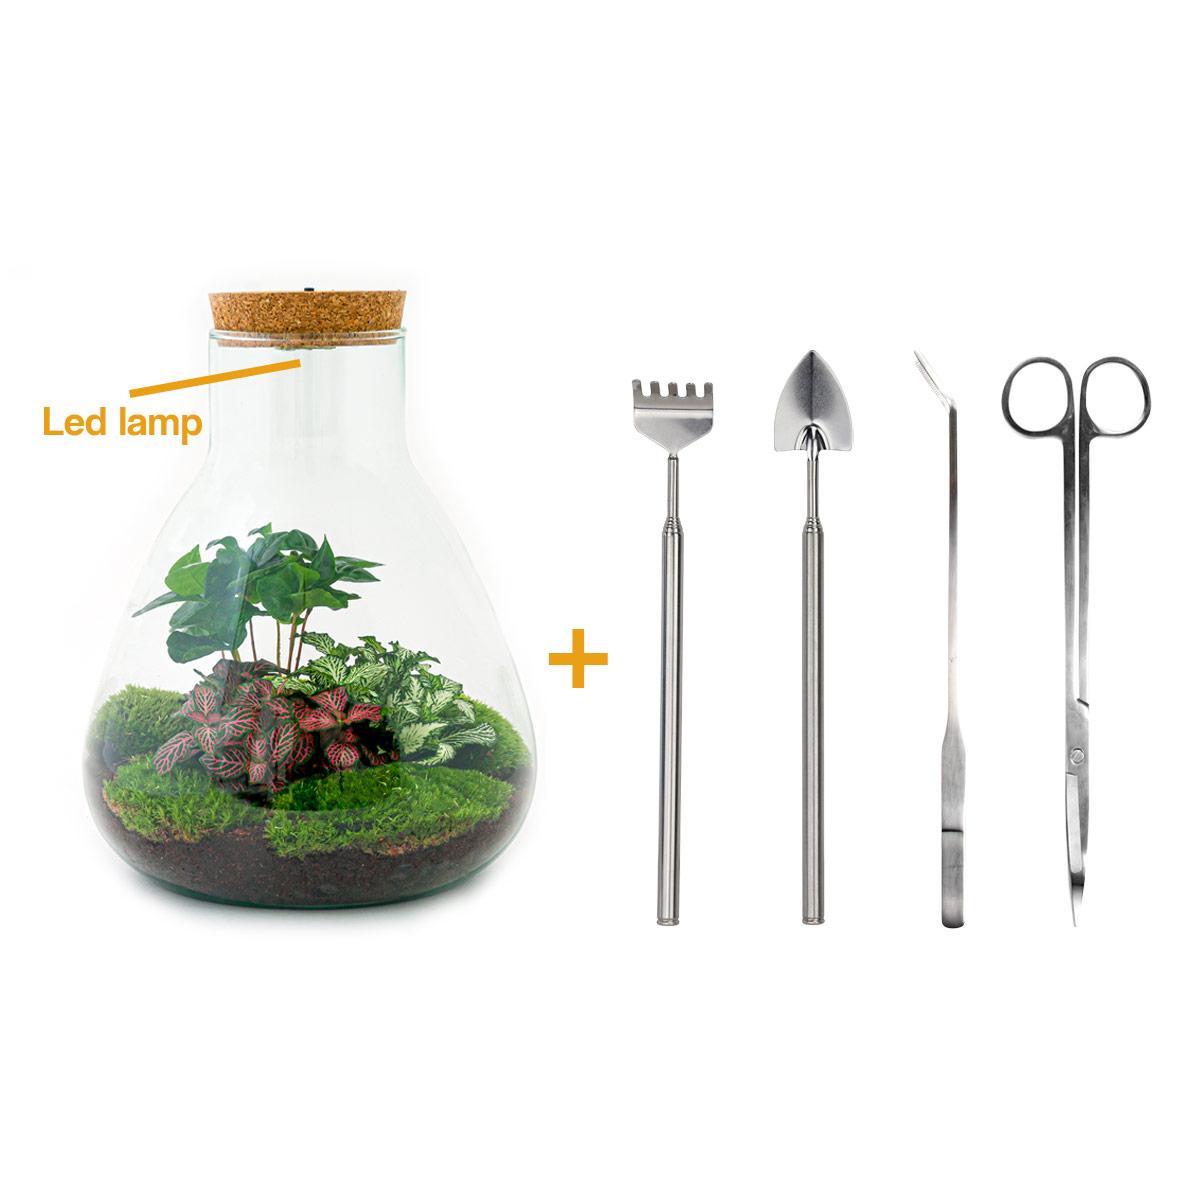 DIY terrarium - Sam Coffea met lamp - ↑ 30 cm + Rake + Shovel + Tweezer + Scissors